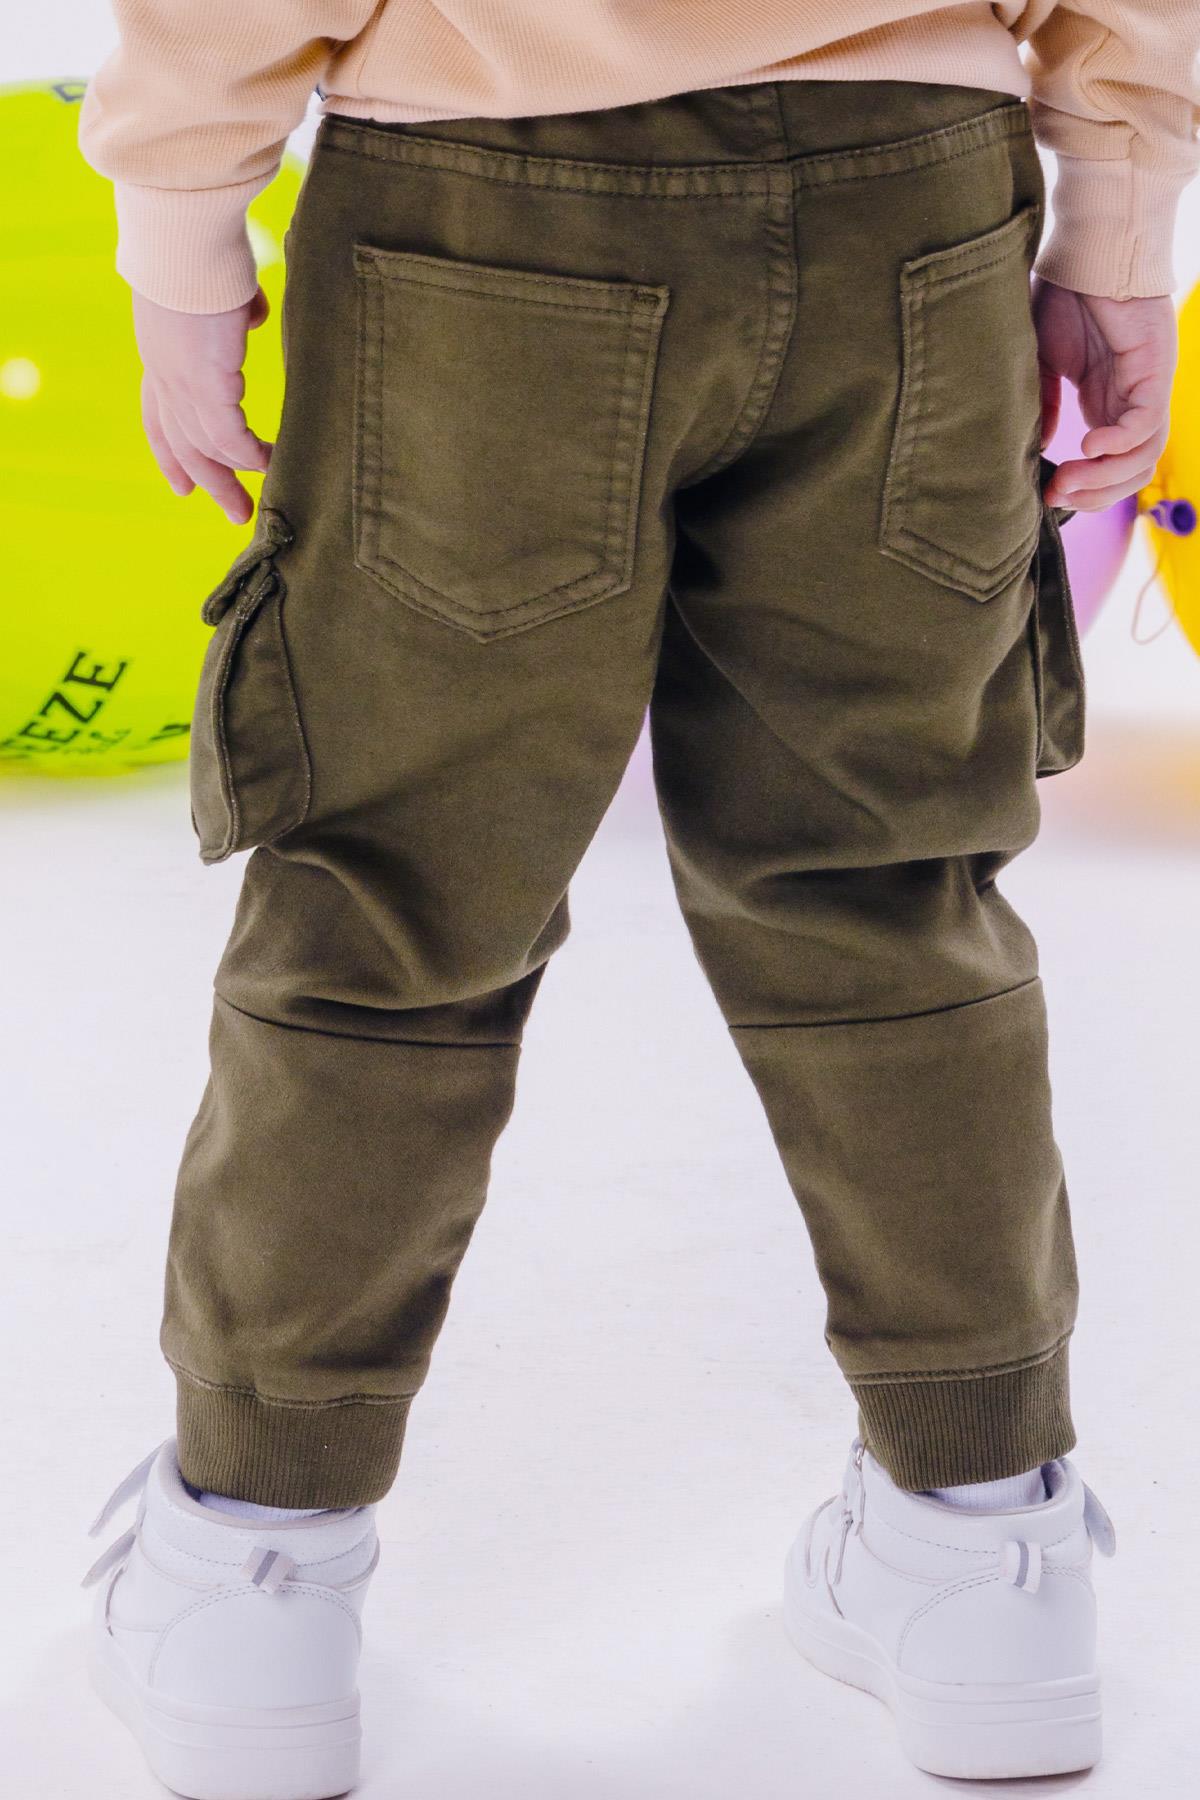 Erkek Çocuk Pantolon Kargo Cepli Beli Lastikli Koyu Haki Yeşil 3-7 Yaş -  Şık Çocuk Pantolonları | Breeze